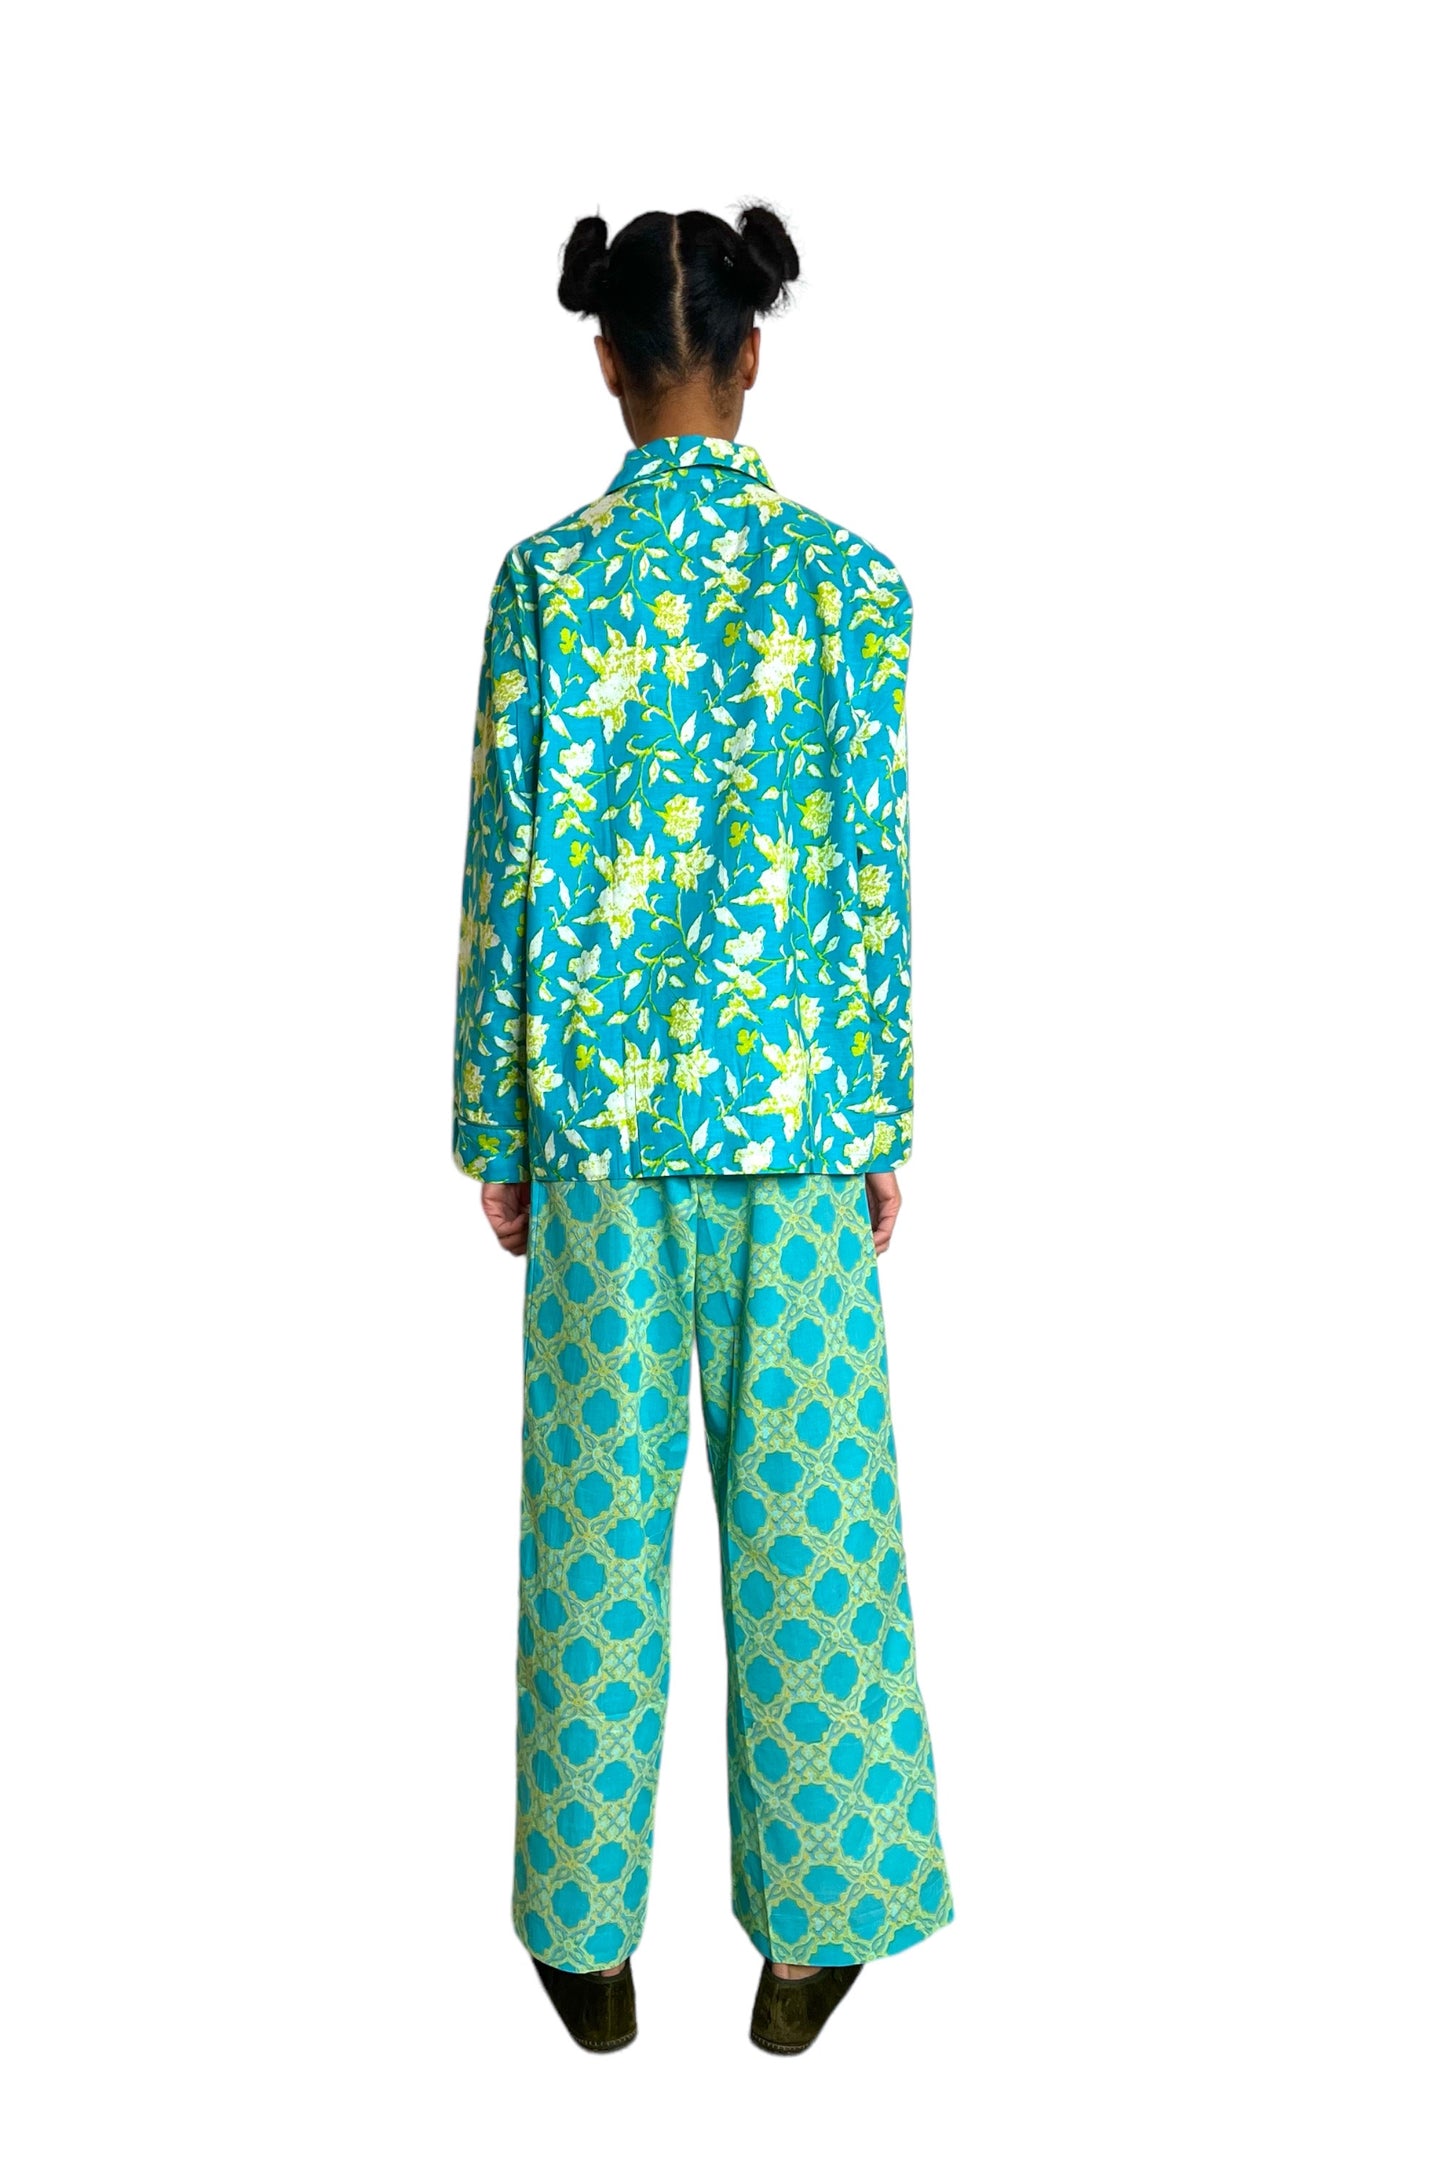 Fair Trade Amelia Pajamas